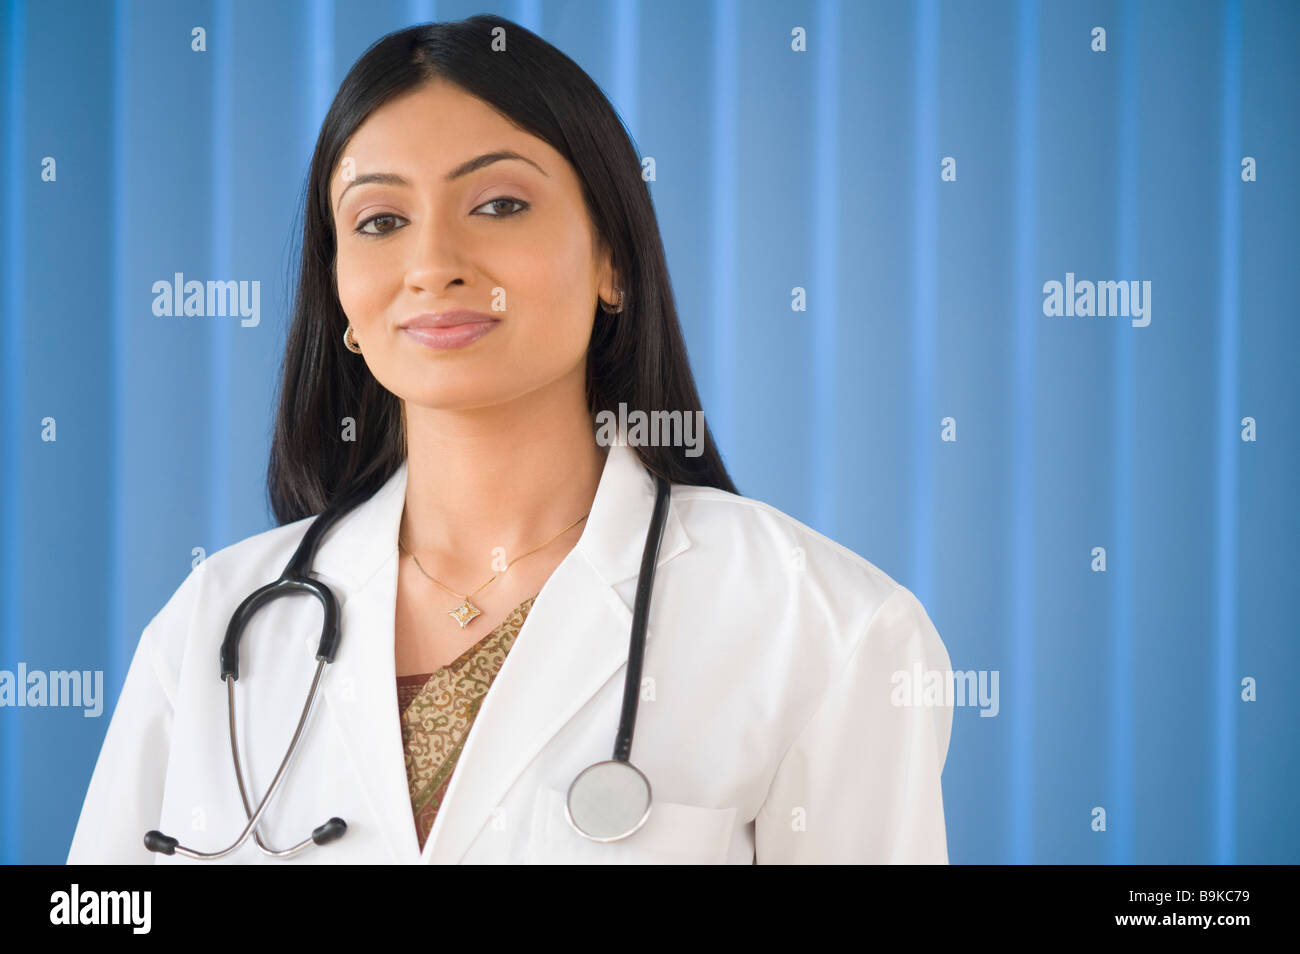 Porträt von einer Ärztin lächelnd Stockfoto